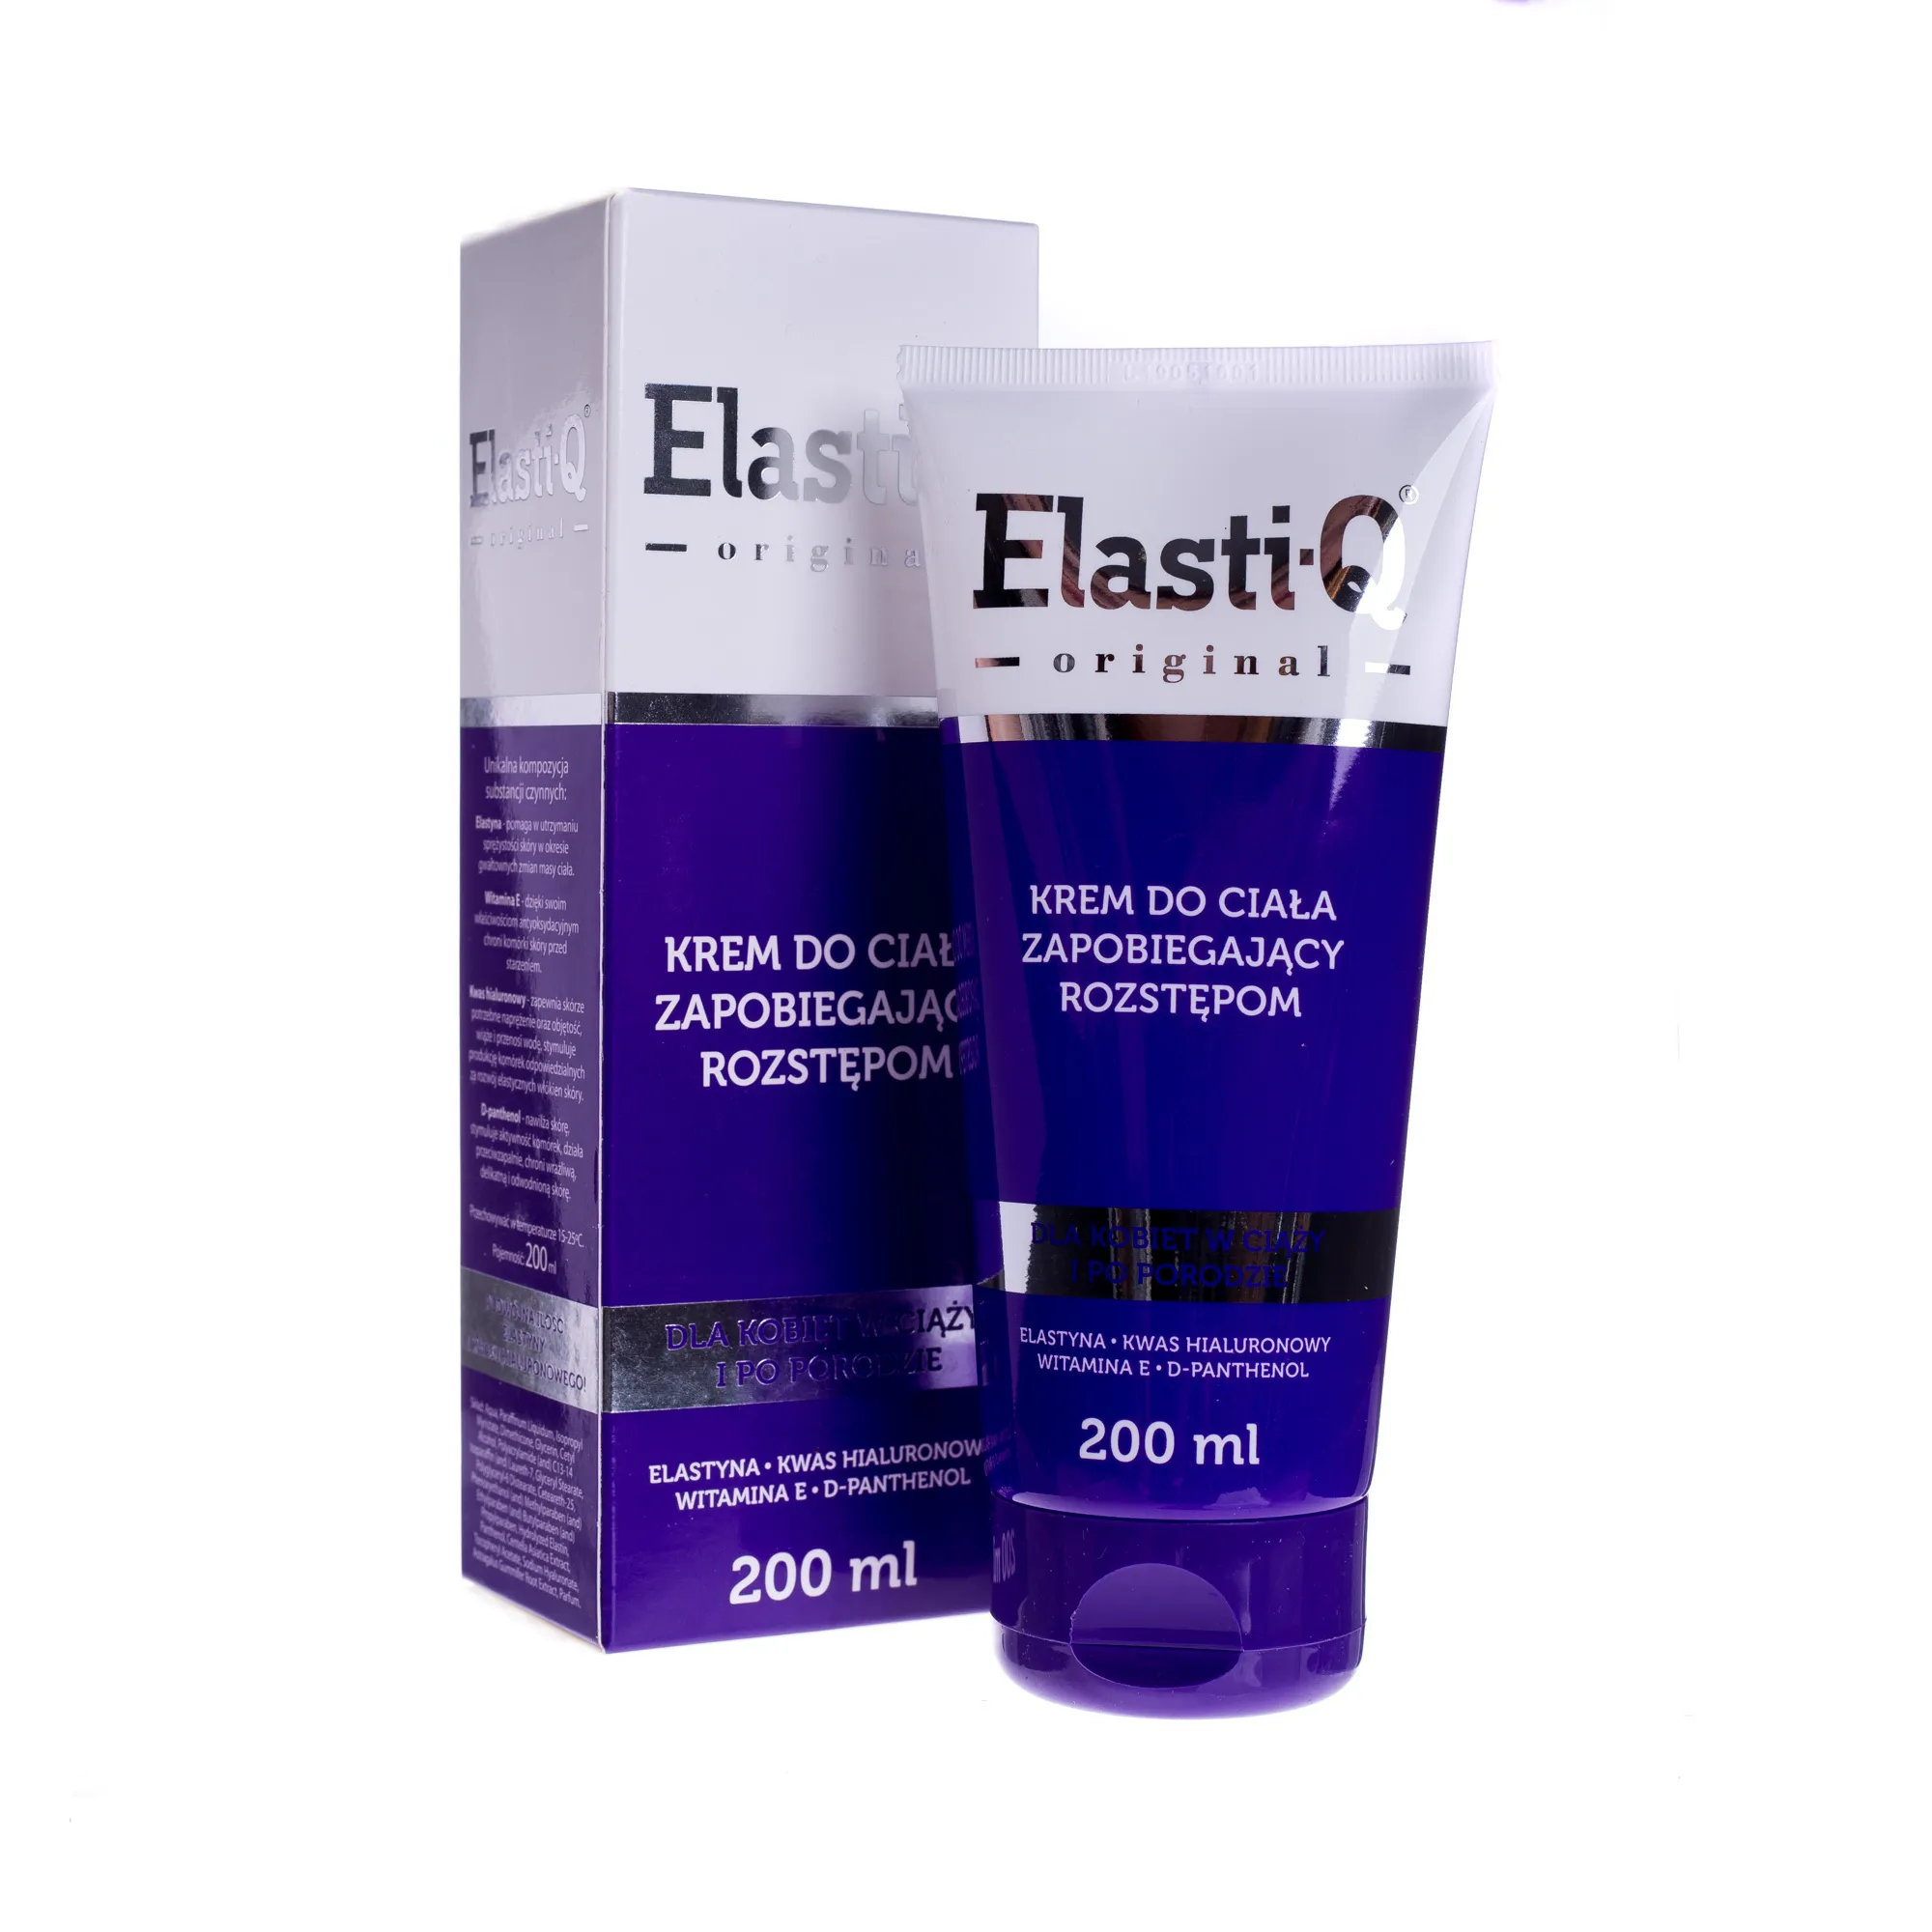 Elasti-Q Original, Krem do ciała zapobiegający rozstępom, dla kobiet w ciąży i po porodzie, 200 ml